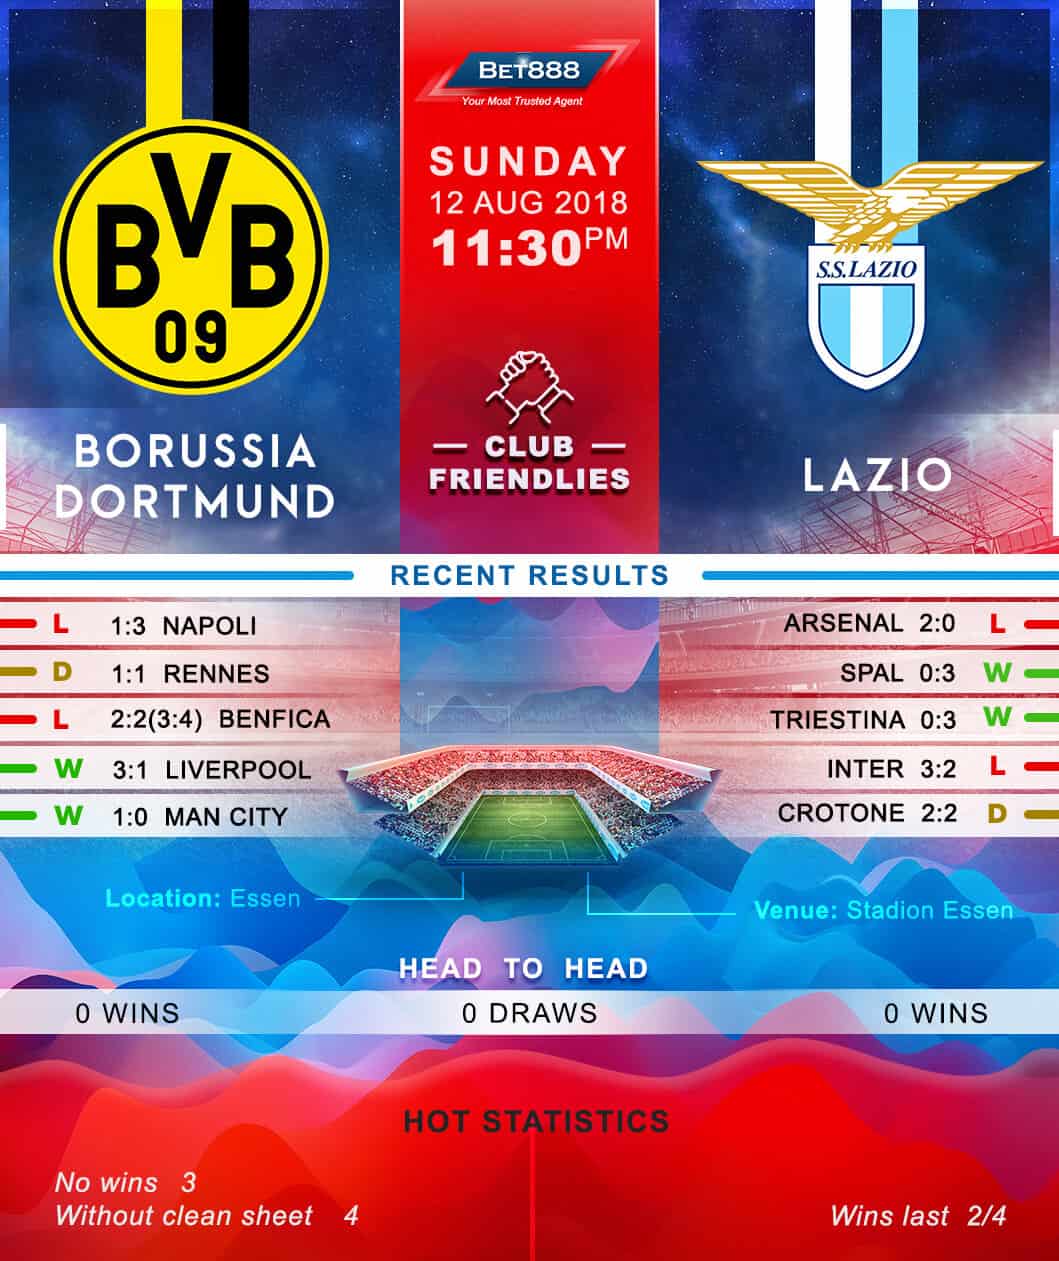 Borussia Dortmund vs Lazio 12/08/18